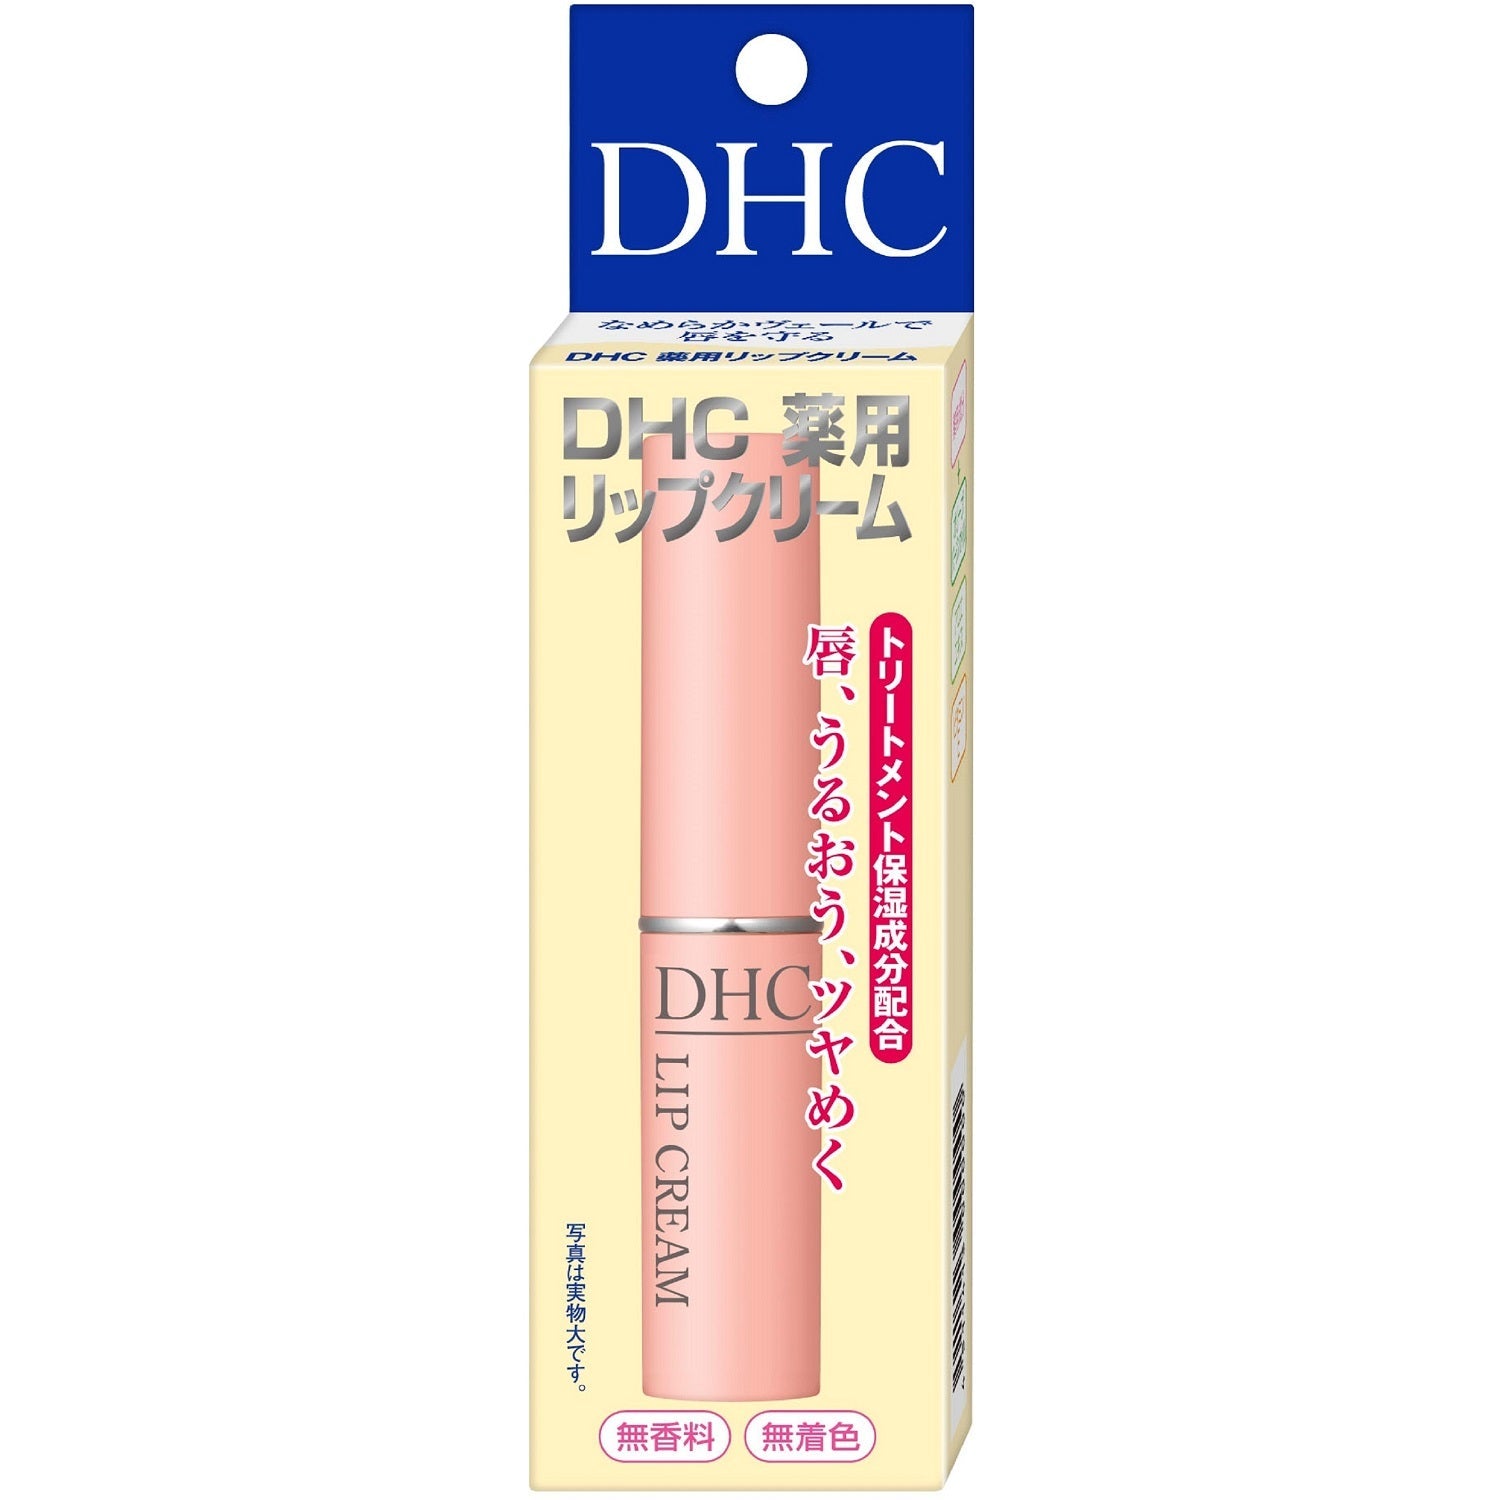 DHC薬用リップクリーム 1.5g ディーエイチシー – トライアルネットスーパー ビジネス